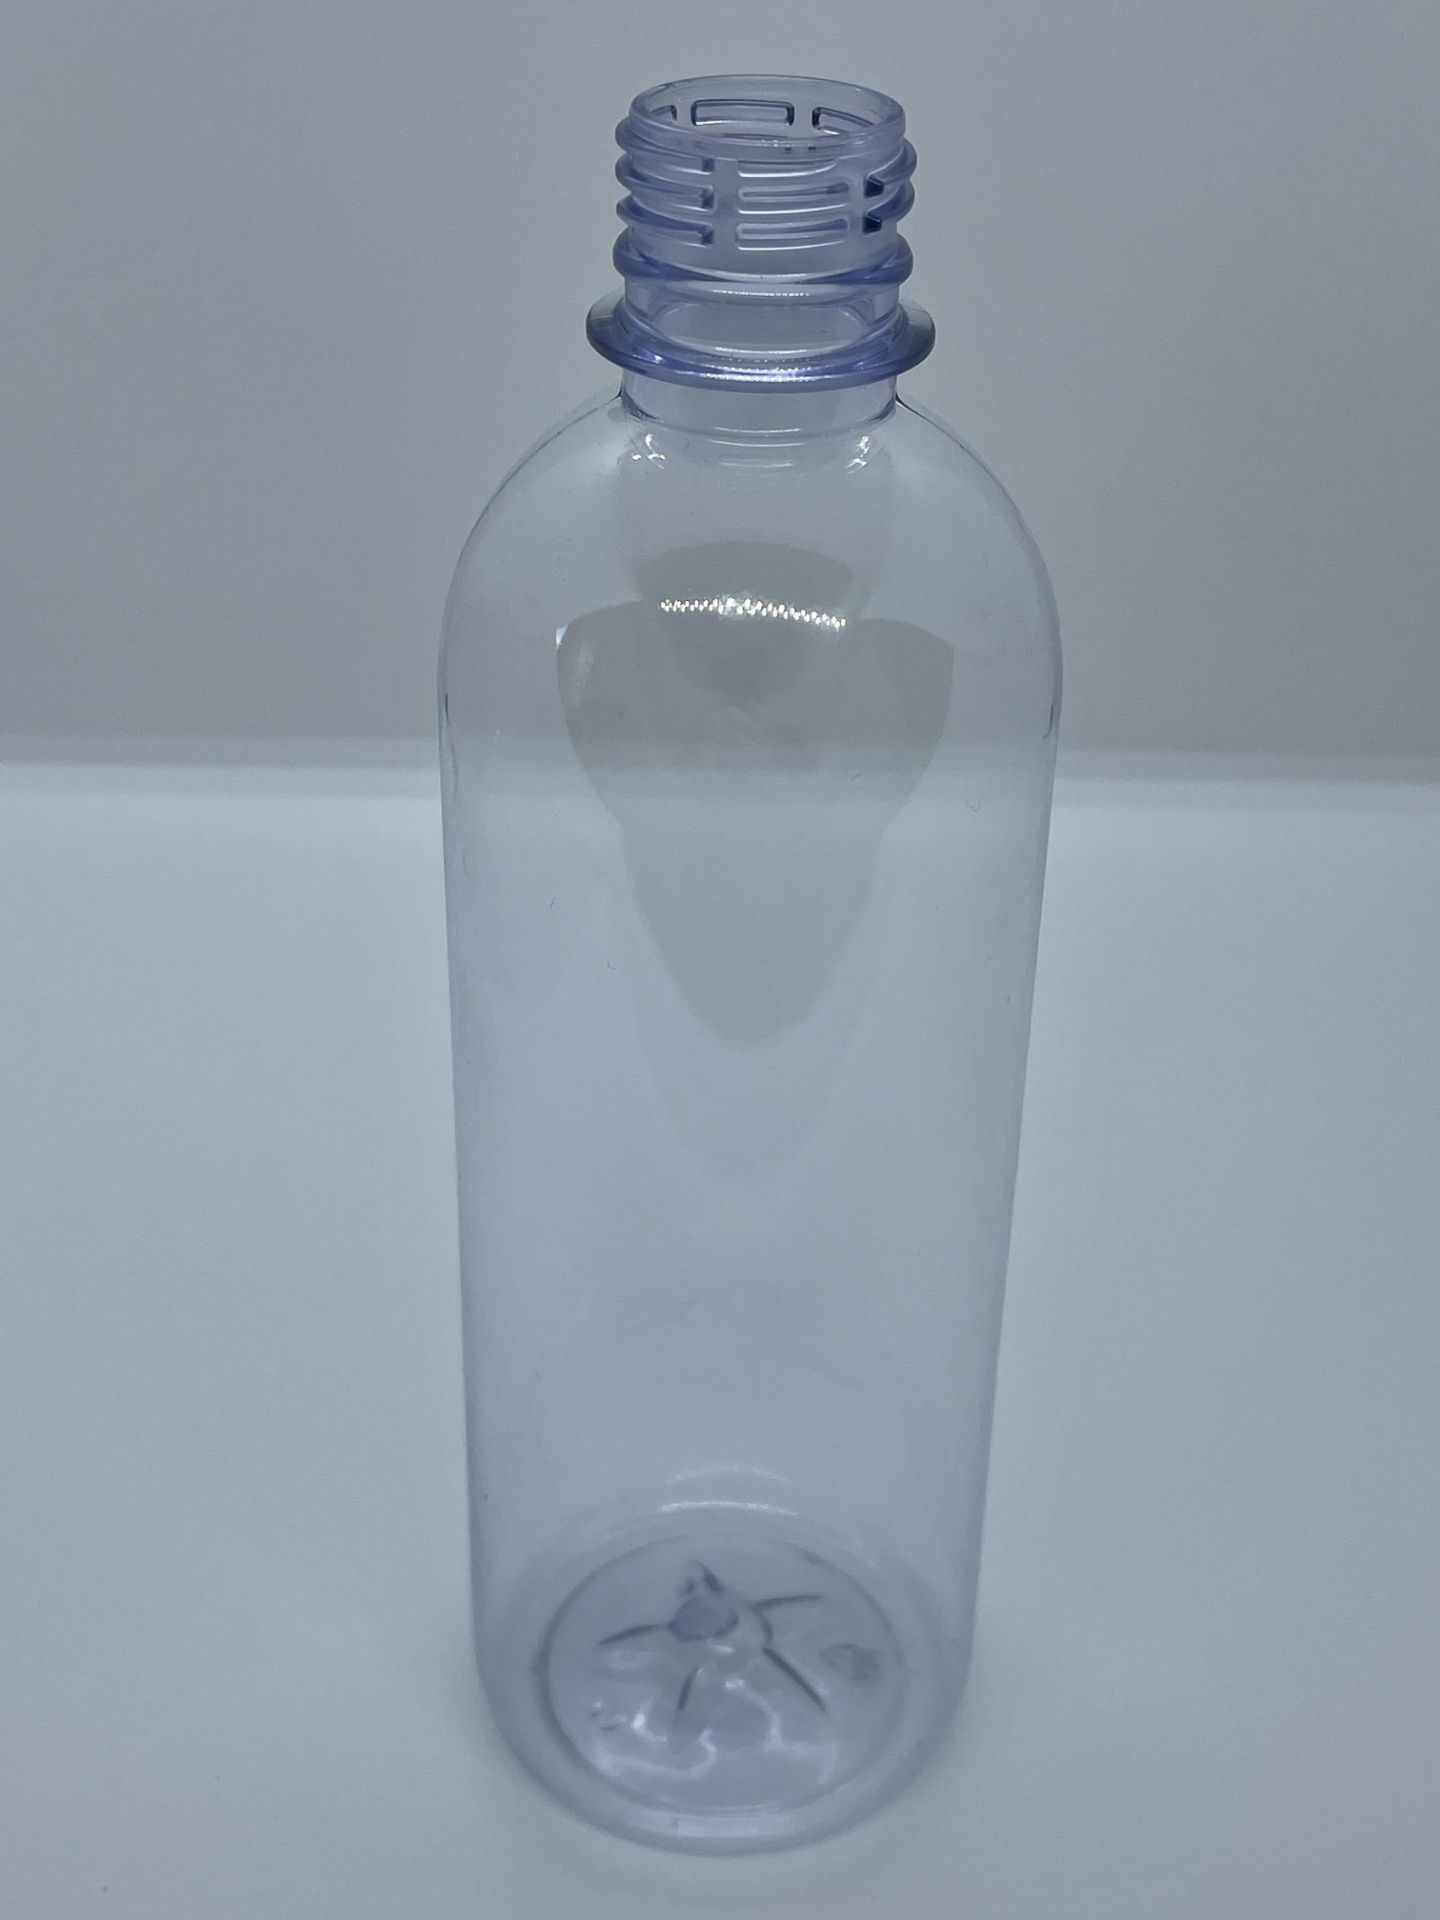 30,000 - 16 oz Empty Bullet Plastic Bottles, Neck Threading 28-410, 8" Tall, 2.5" Diameter - Image 6 of 8